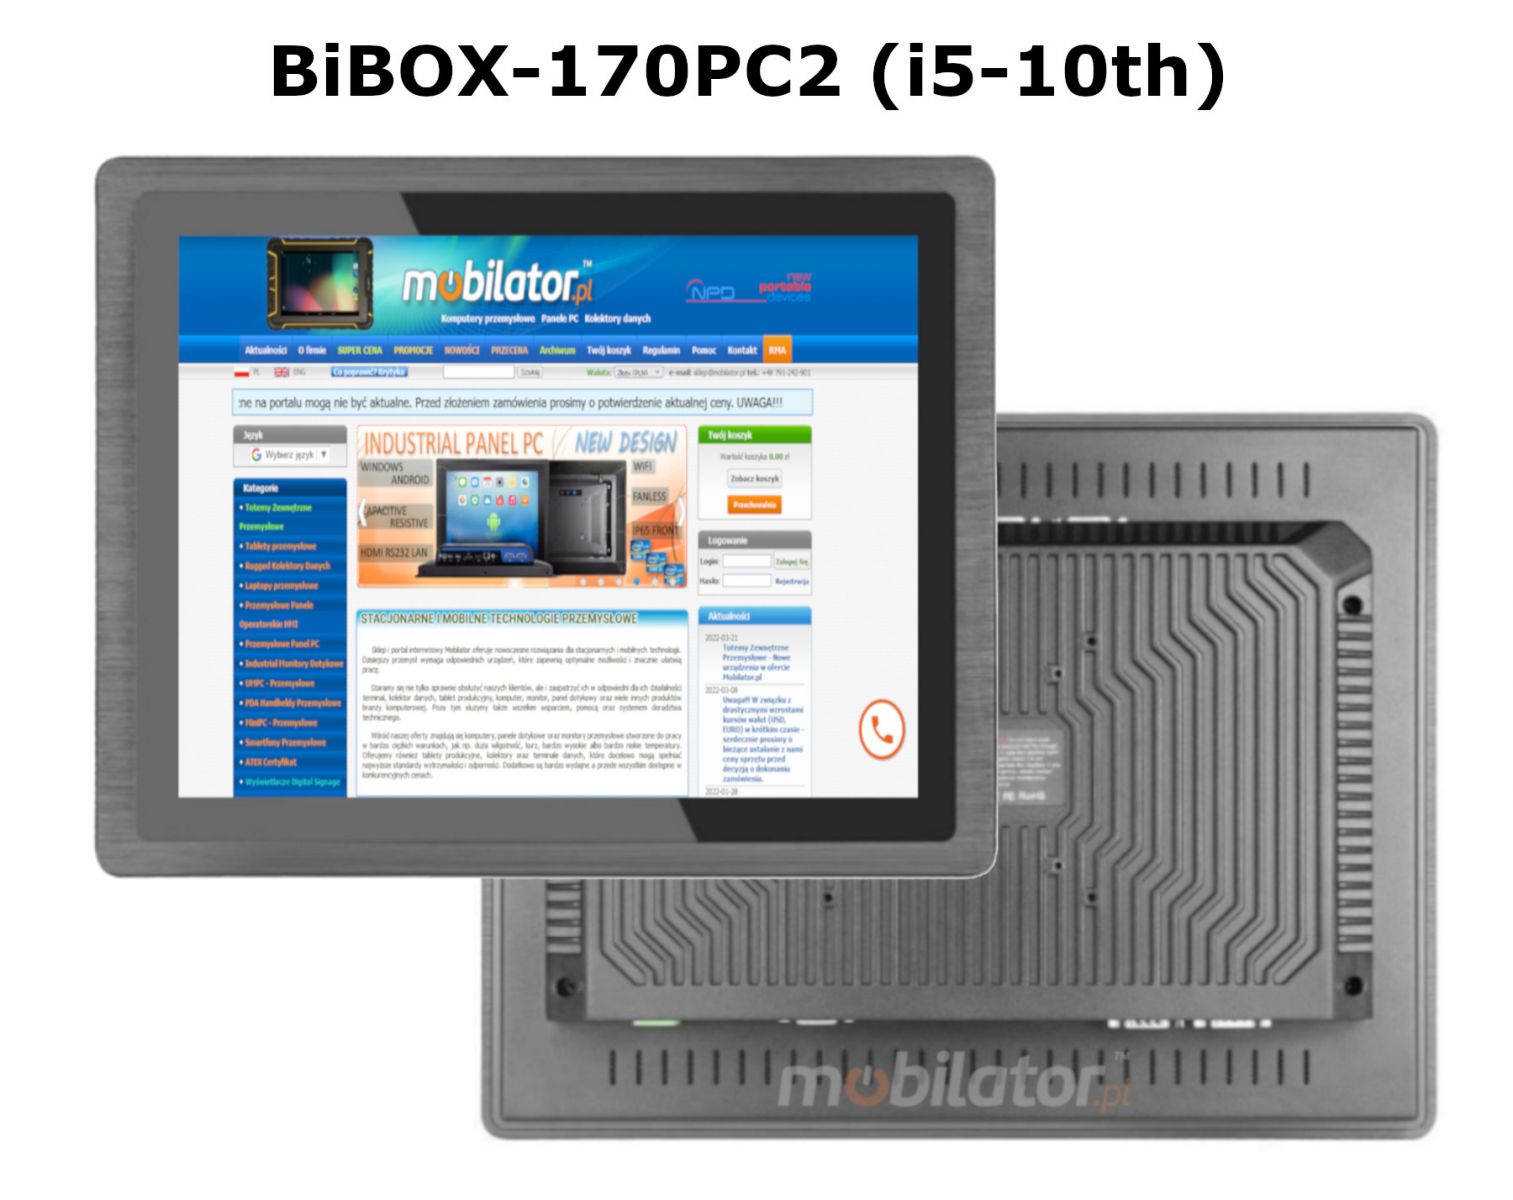 BIBOX-170PC2 z WiFi i Bluetooth orz pojemnociowym dyskiem SSD i RAM